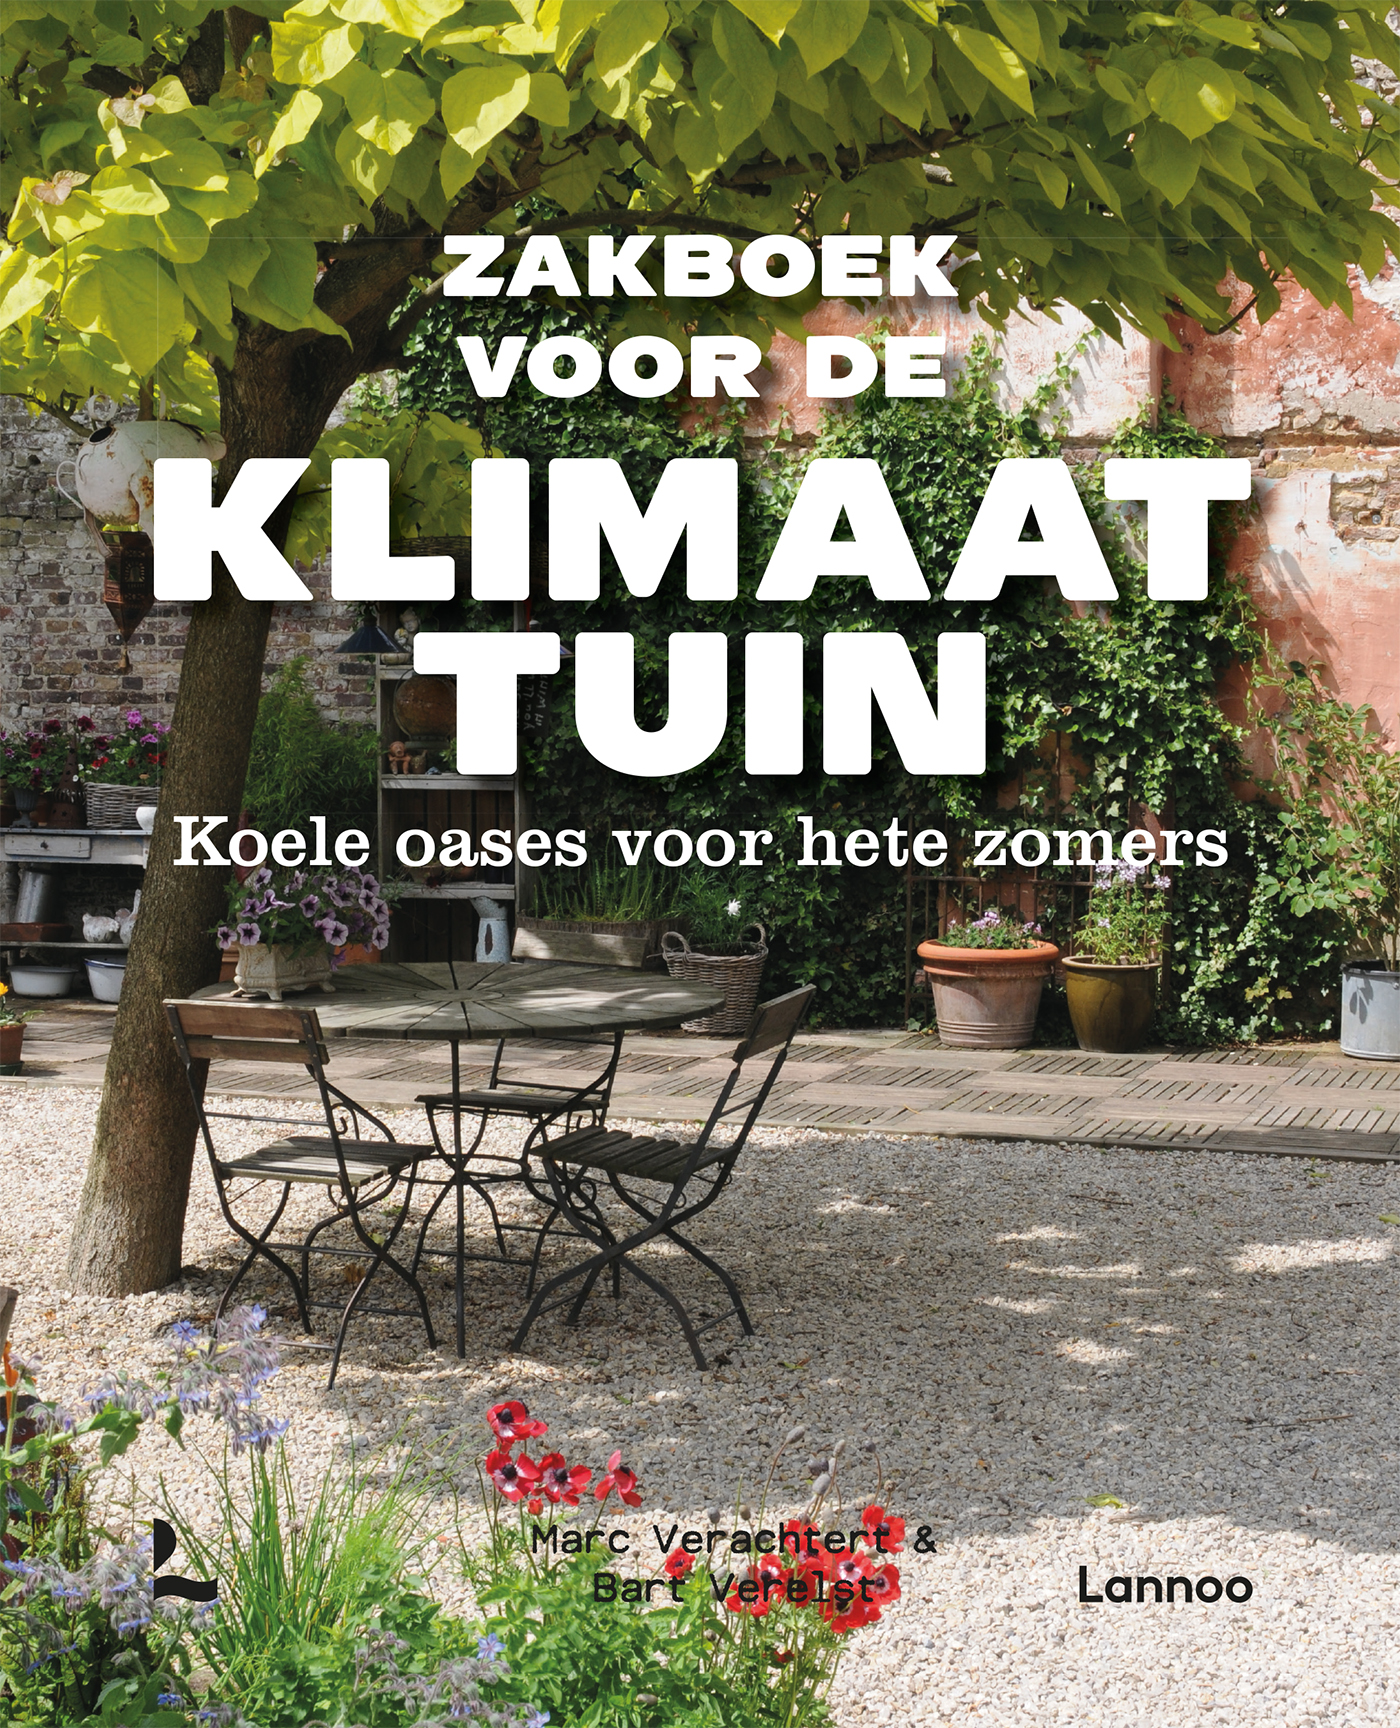 Beraadslagen knuffel plotseling Zakboek voor de klimaattuin | Uitgeverij Lannoo